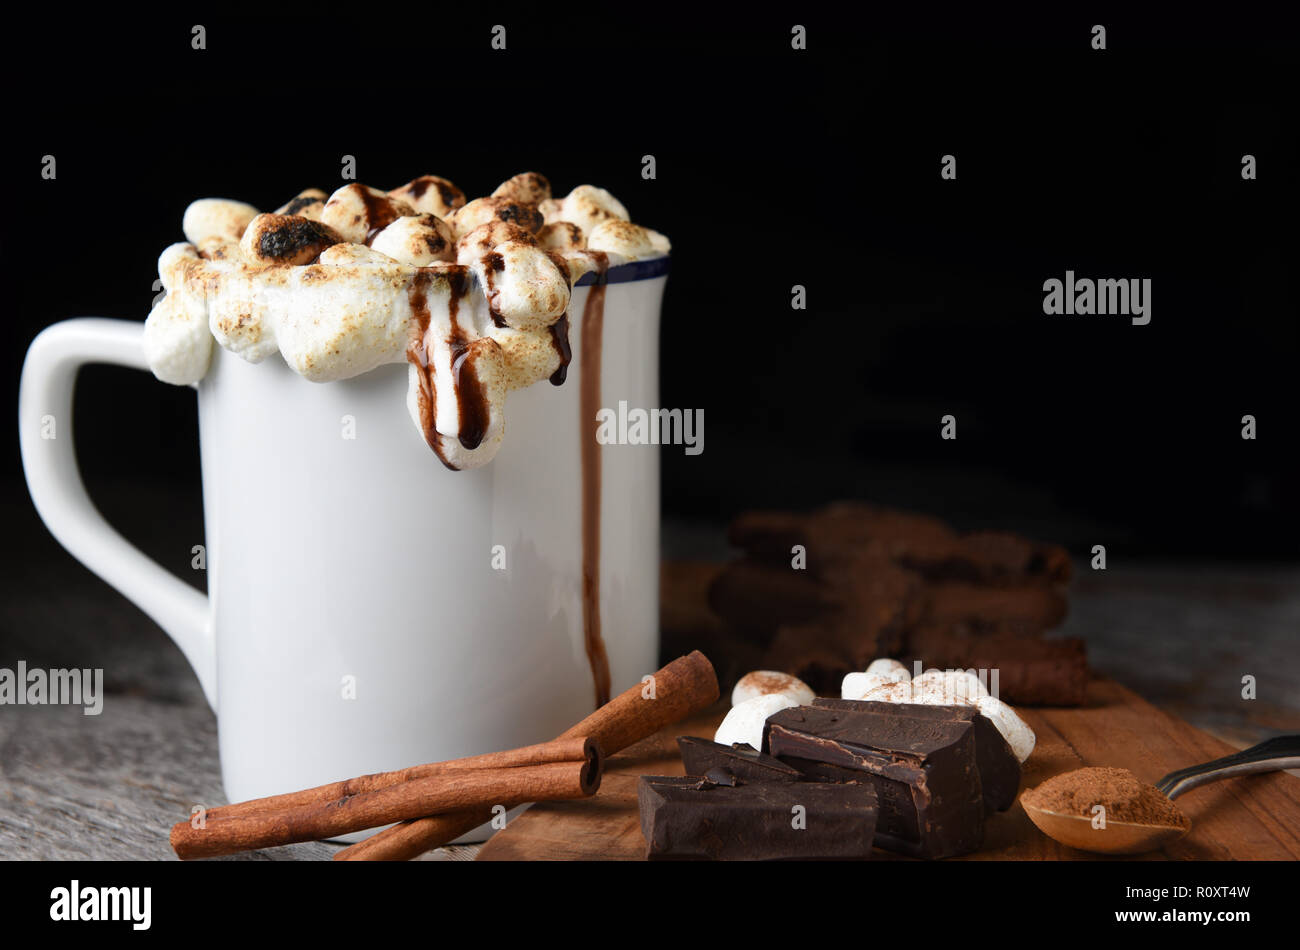 Libre d'une tasse de chocolat chaud avec des guimauves grillées avec des morceaux de chocolat, les cookies, les bâtons de cannelle, sur un fond sombre. Banque D'Images